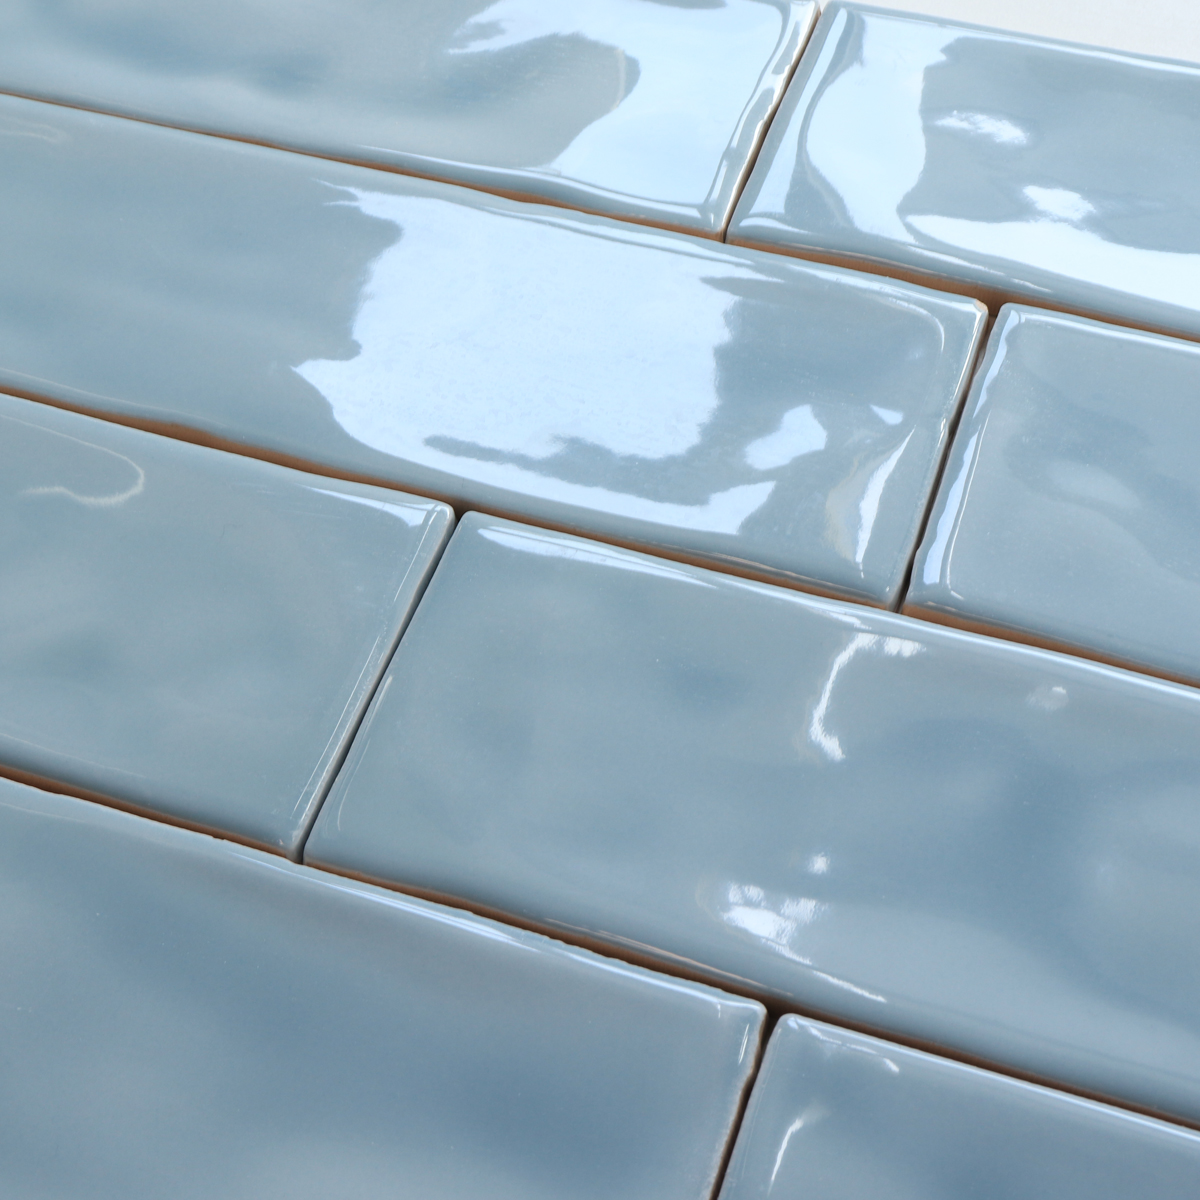 Blue glazed ceramic wall tile and floor tile